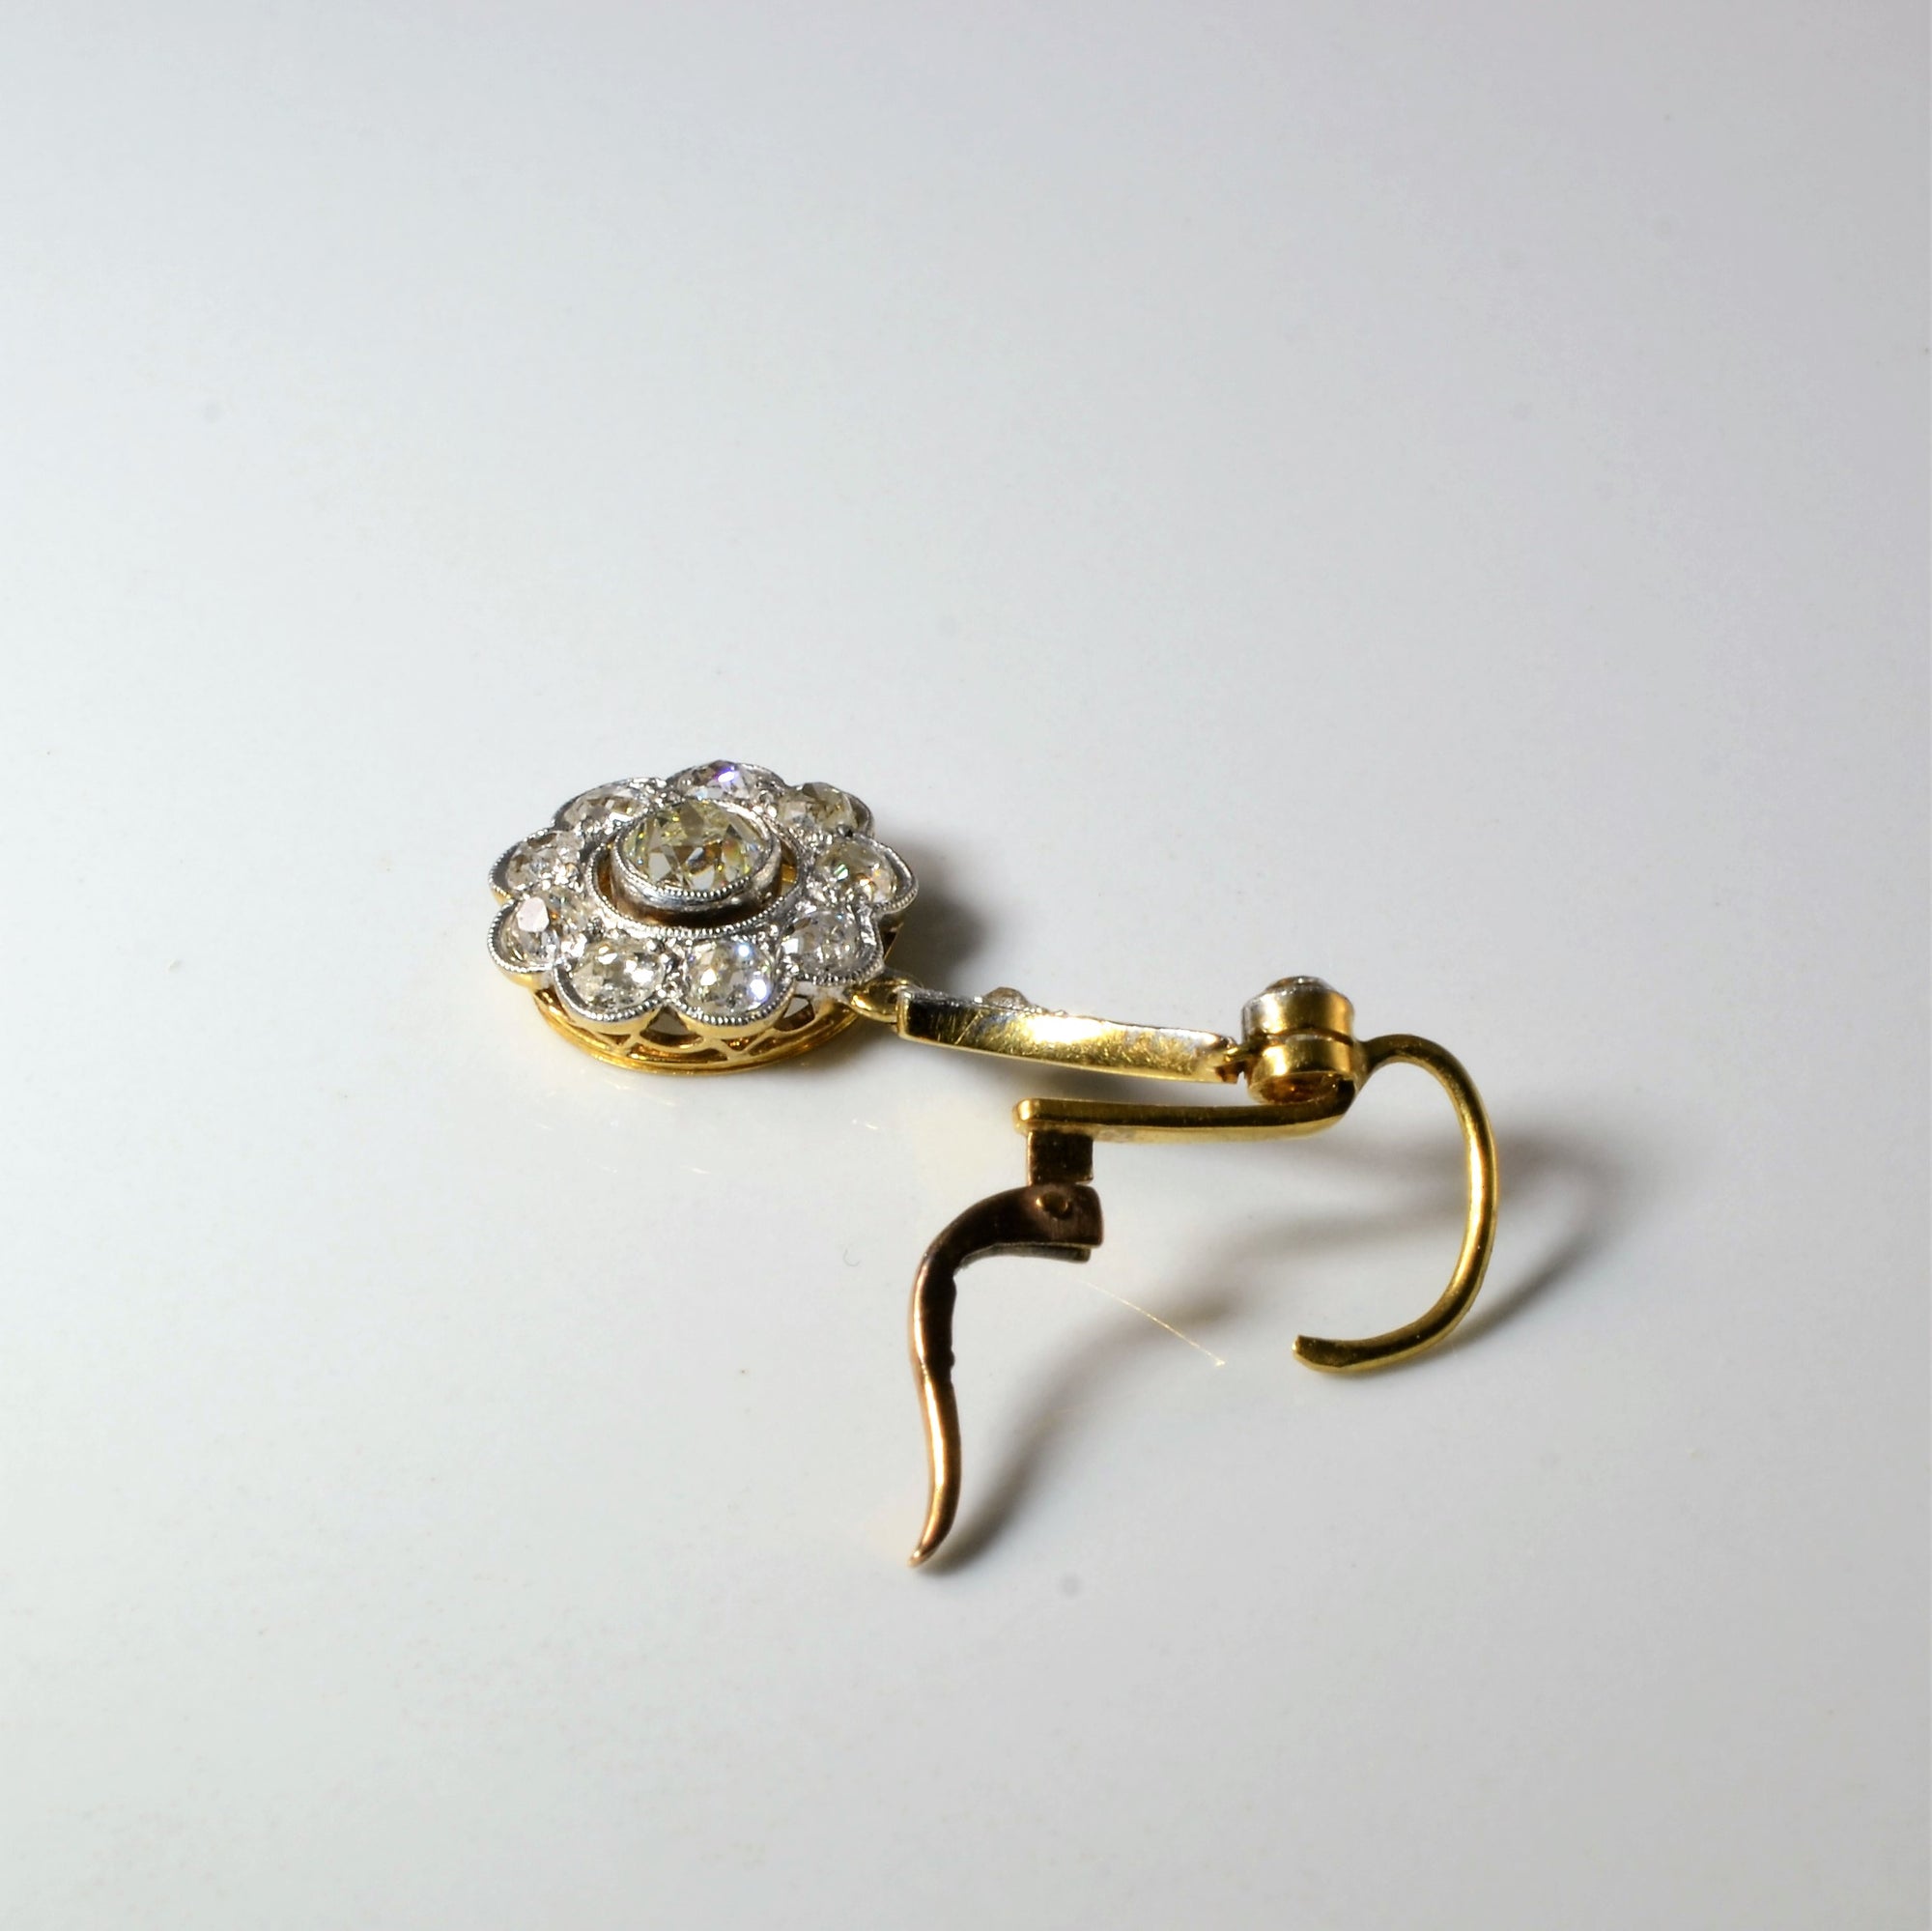 Edwardian Diamond Cluster Earrings | 2.34ctw |